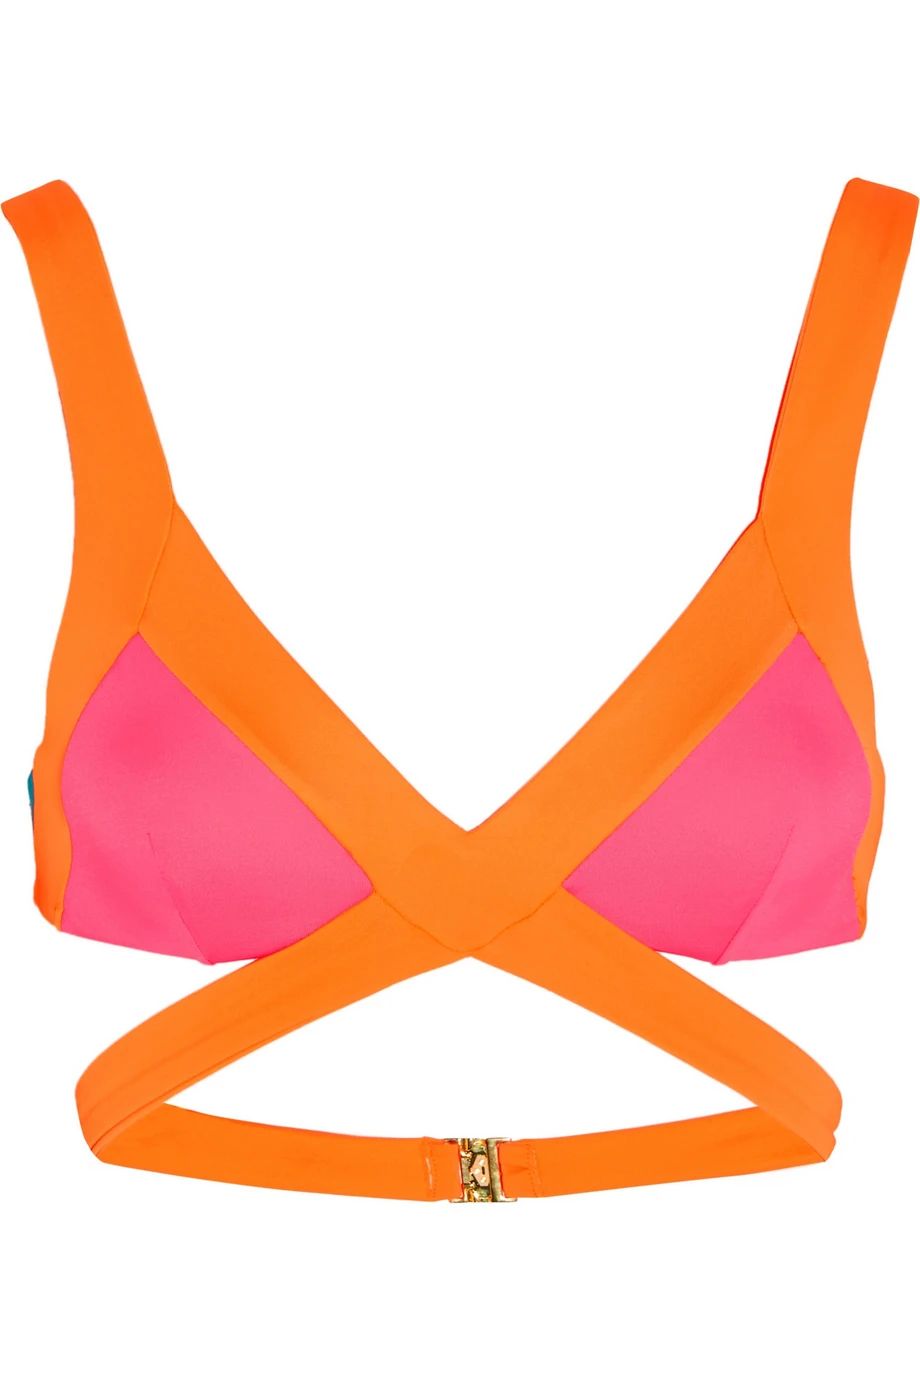 Agent Provocateur Mazzy Popstar Triangle Bikini Top, Fuchsia/Orange, Women's, Size: 2 | NET-A-PORTER (US)